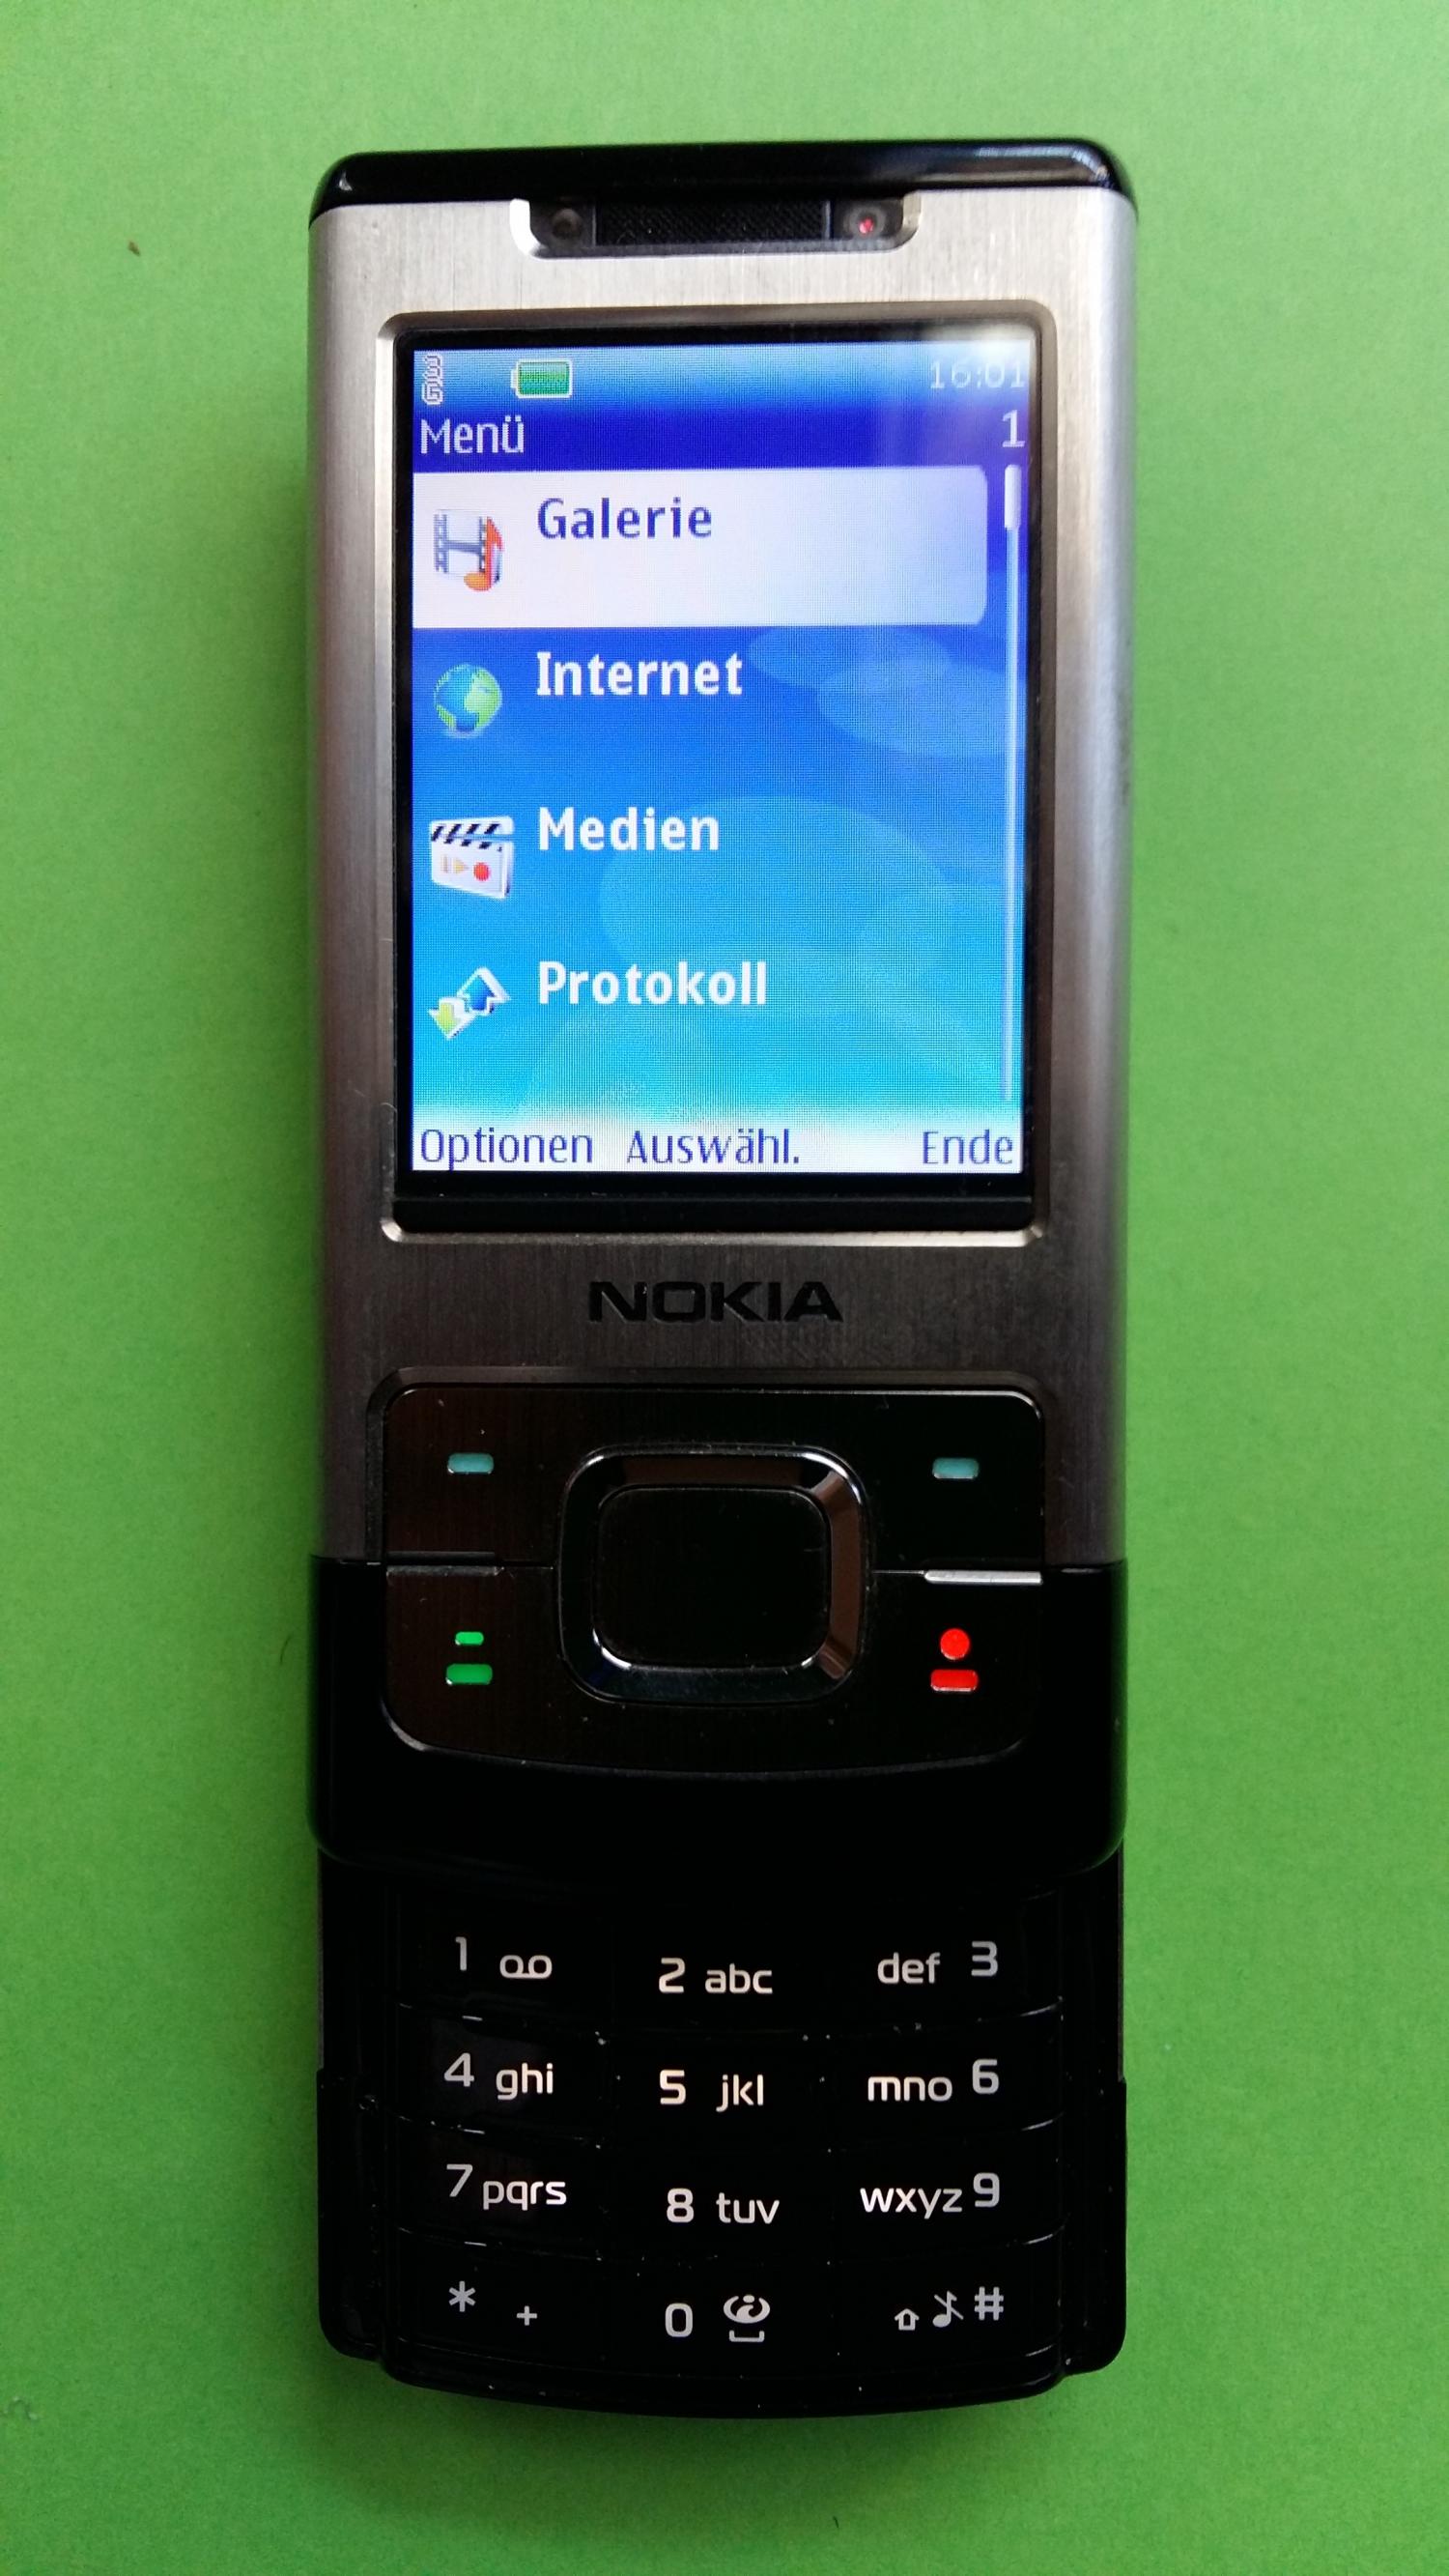 image-7328915-Nokia 6500S-1 (1)2.jpg